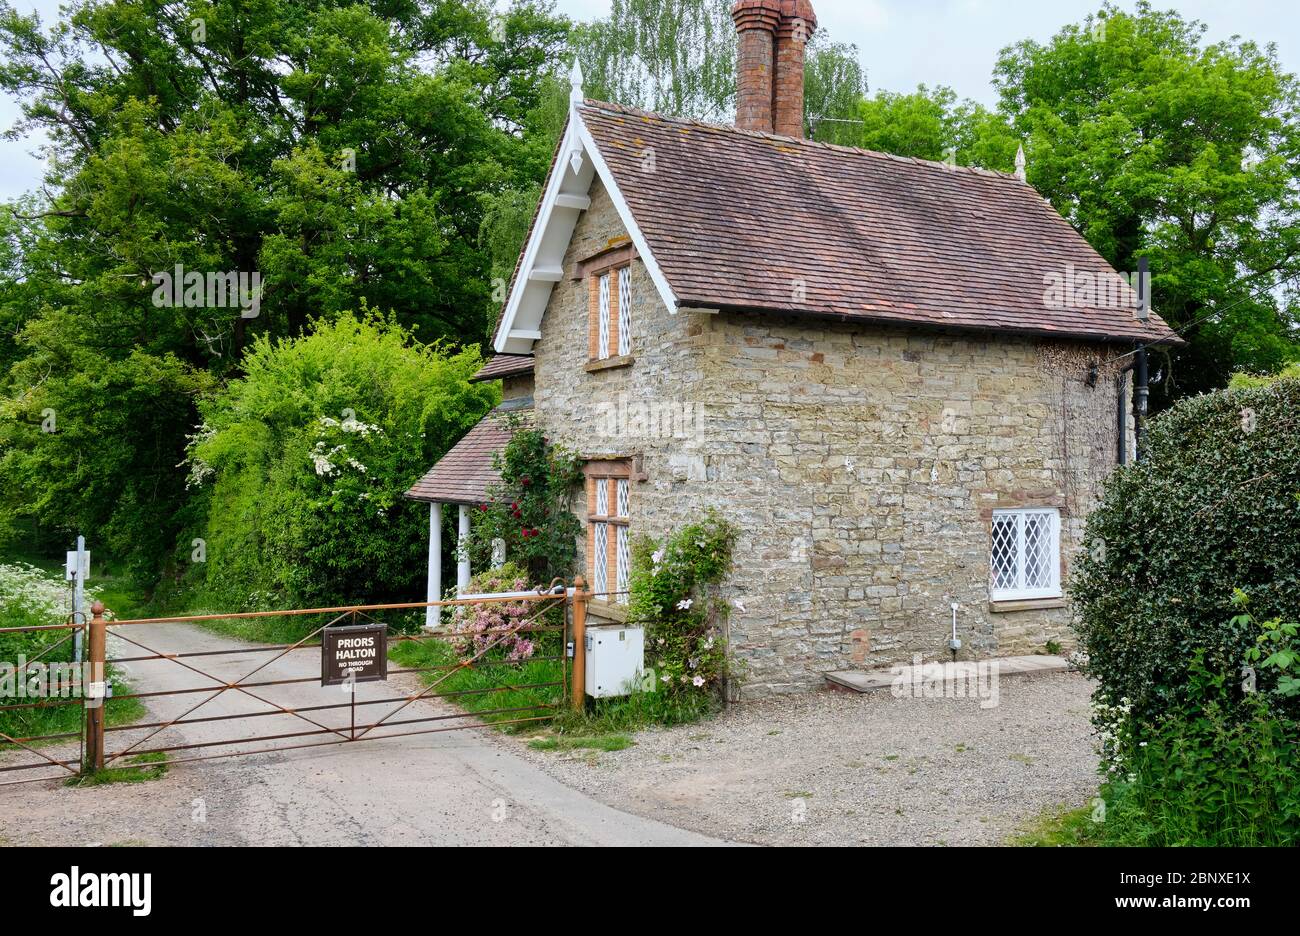 Cottage near Priors Halton on the Oakly Park Estate, Ludlow, Shropshire Stock Photo